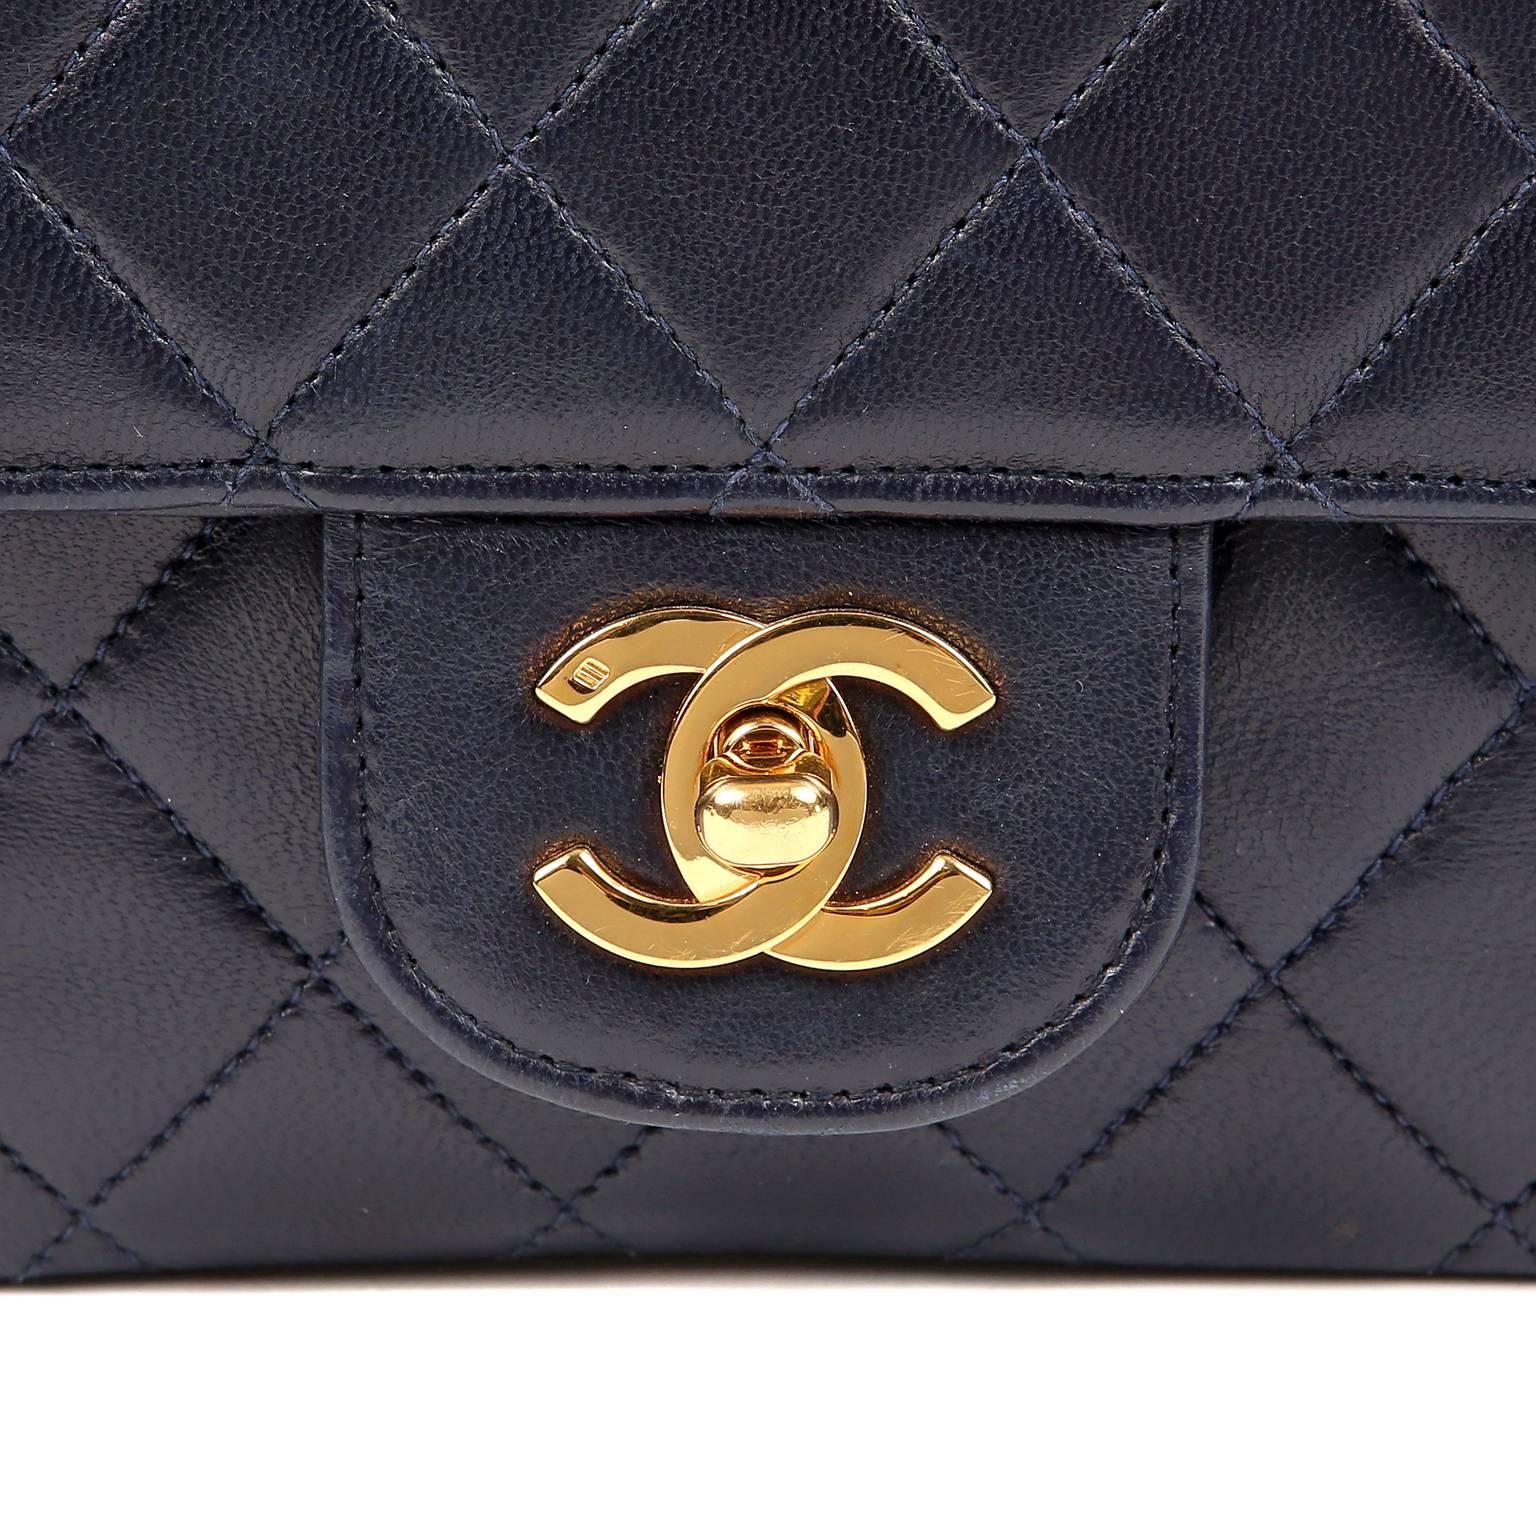 Women's Chanel Navy Lambskin Classic Double Flap Bag- GHW